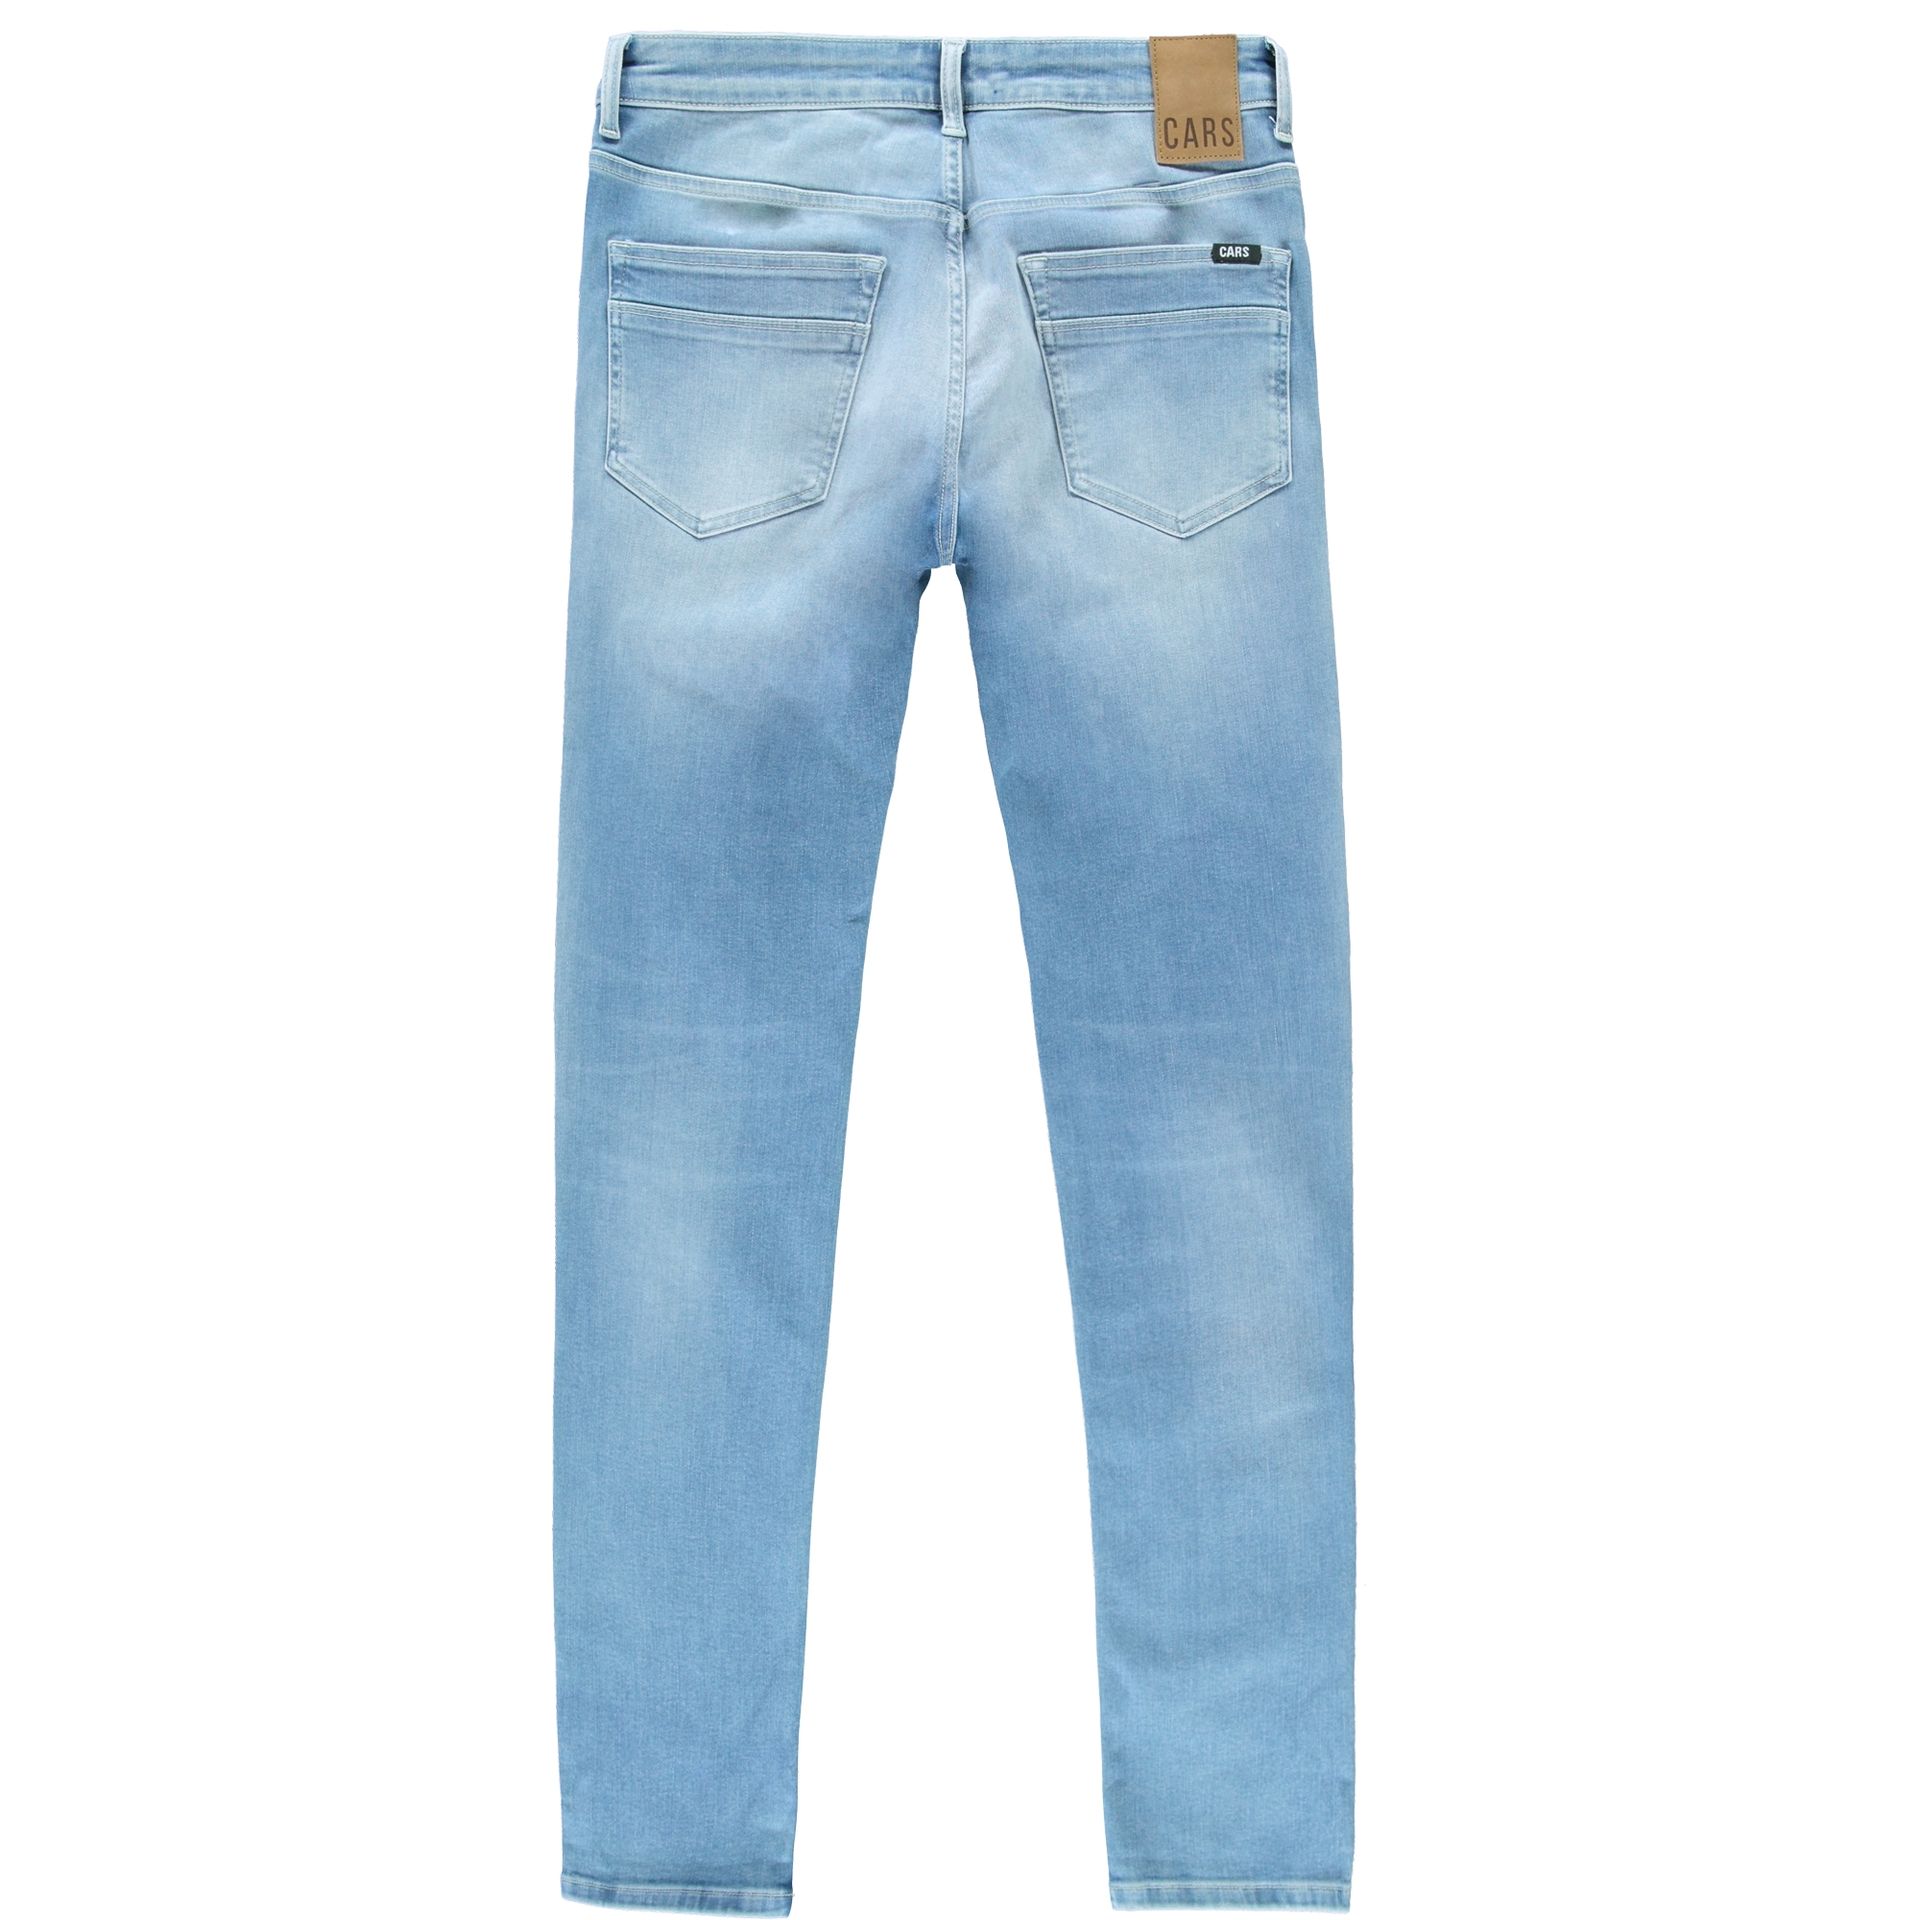 Cars jeans Jeans Bates Slim fit 95 porto wash 2900147113688